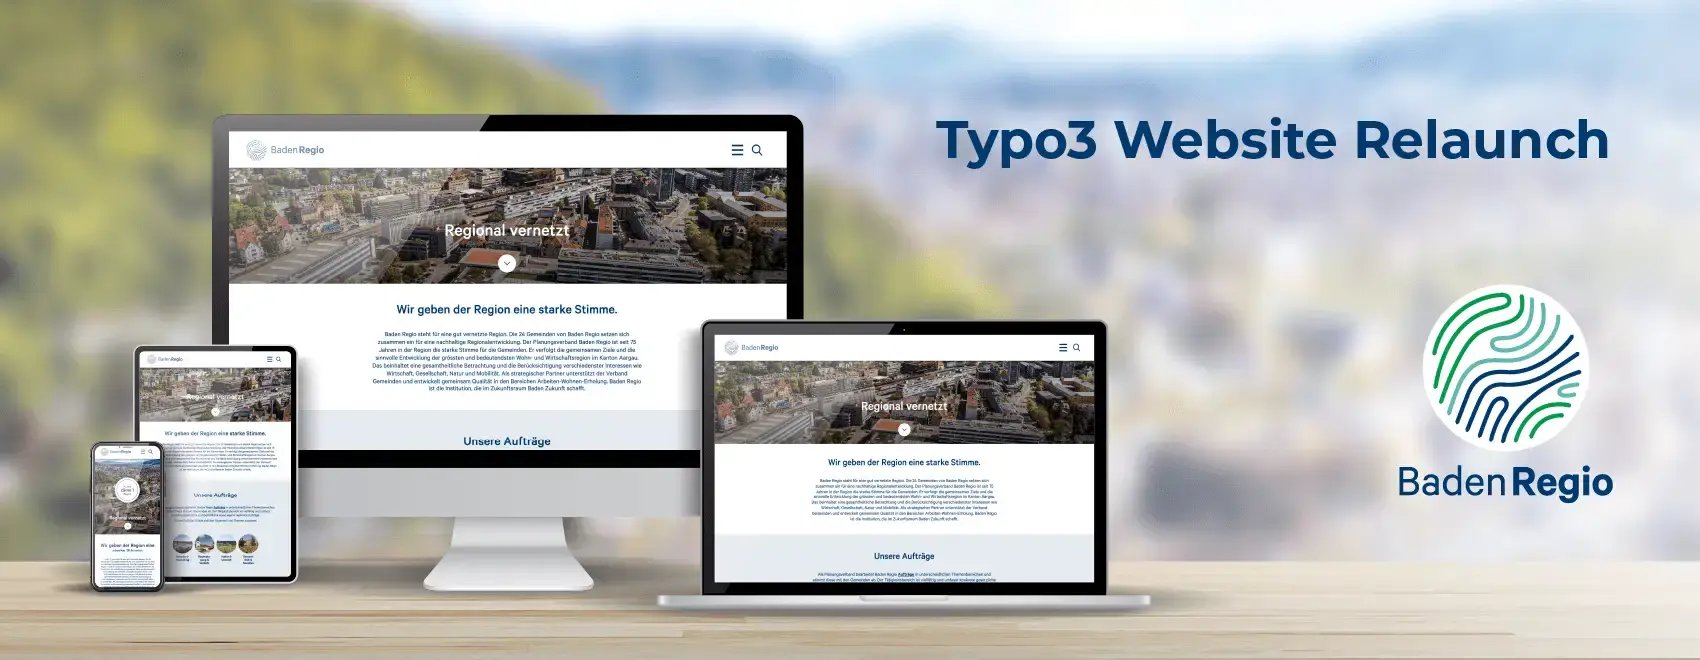 Typo Website Relaunch für BadenRegio